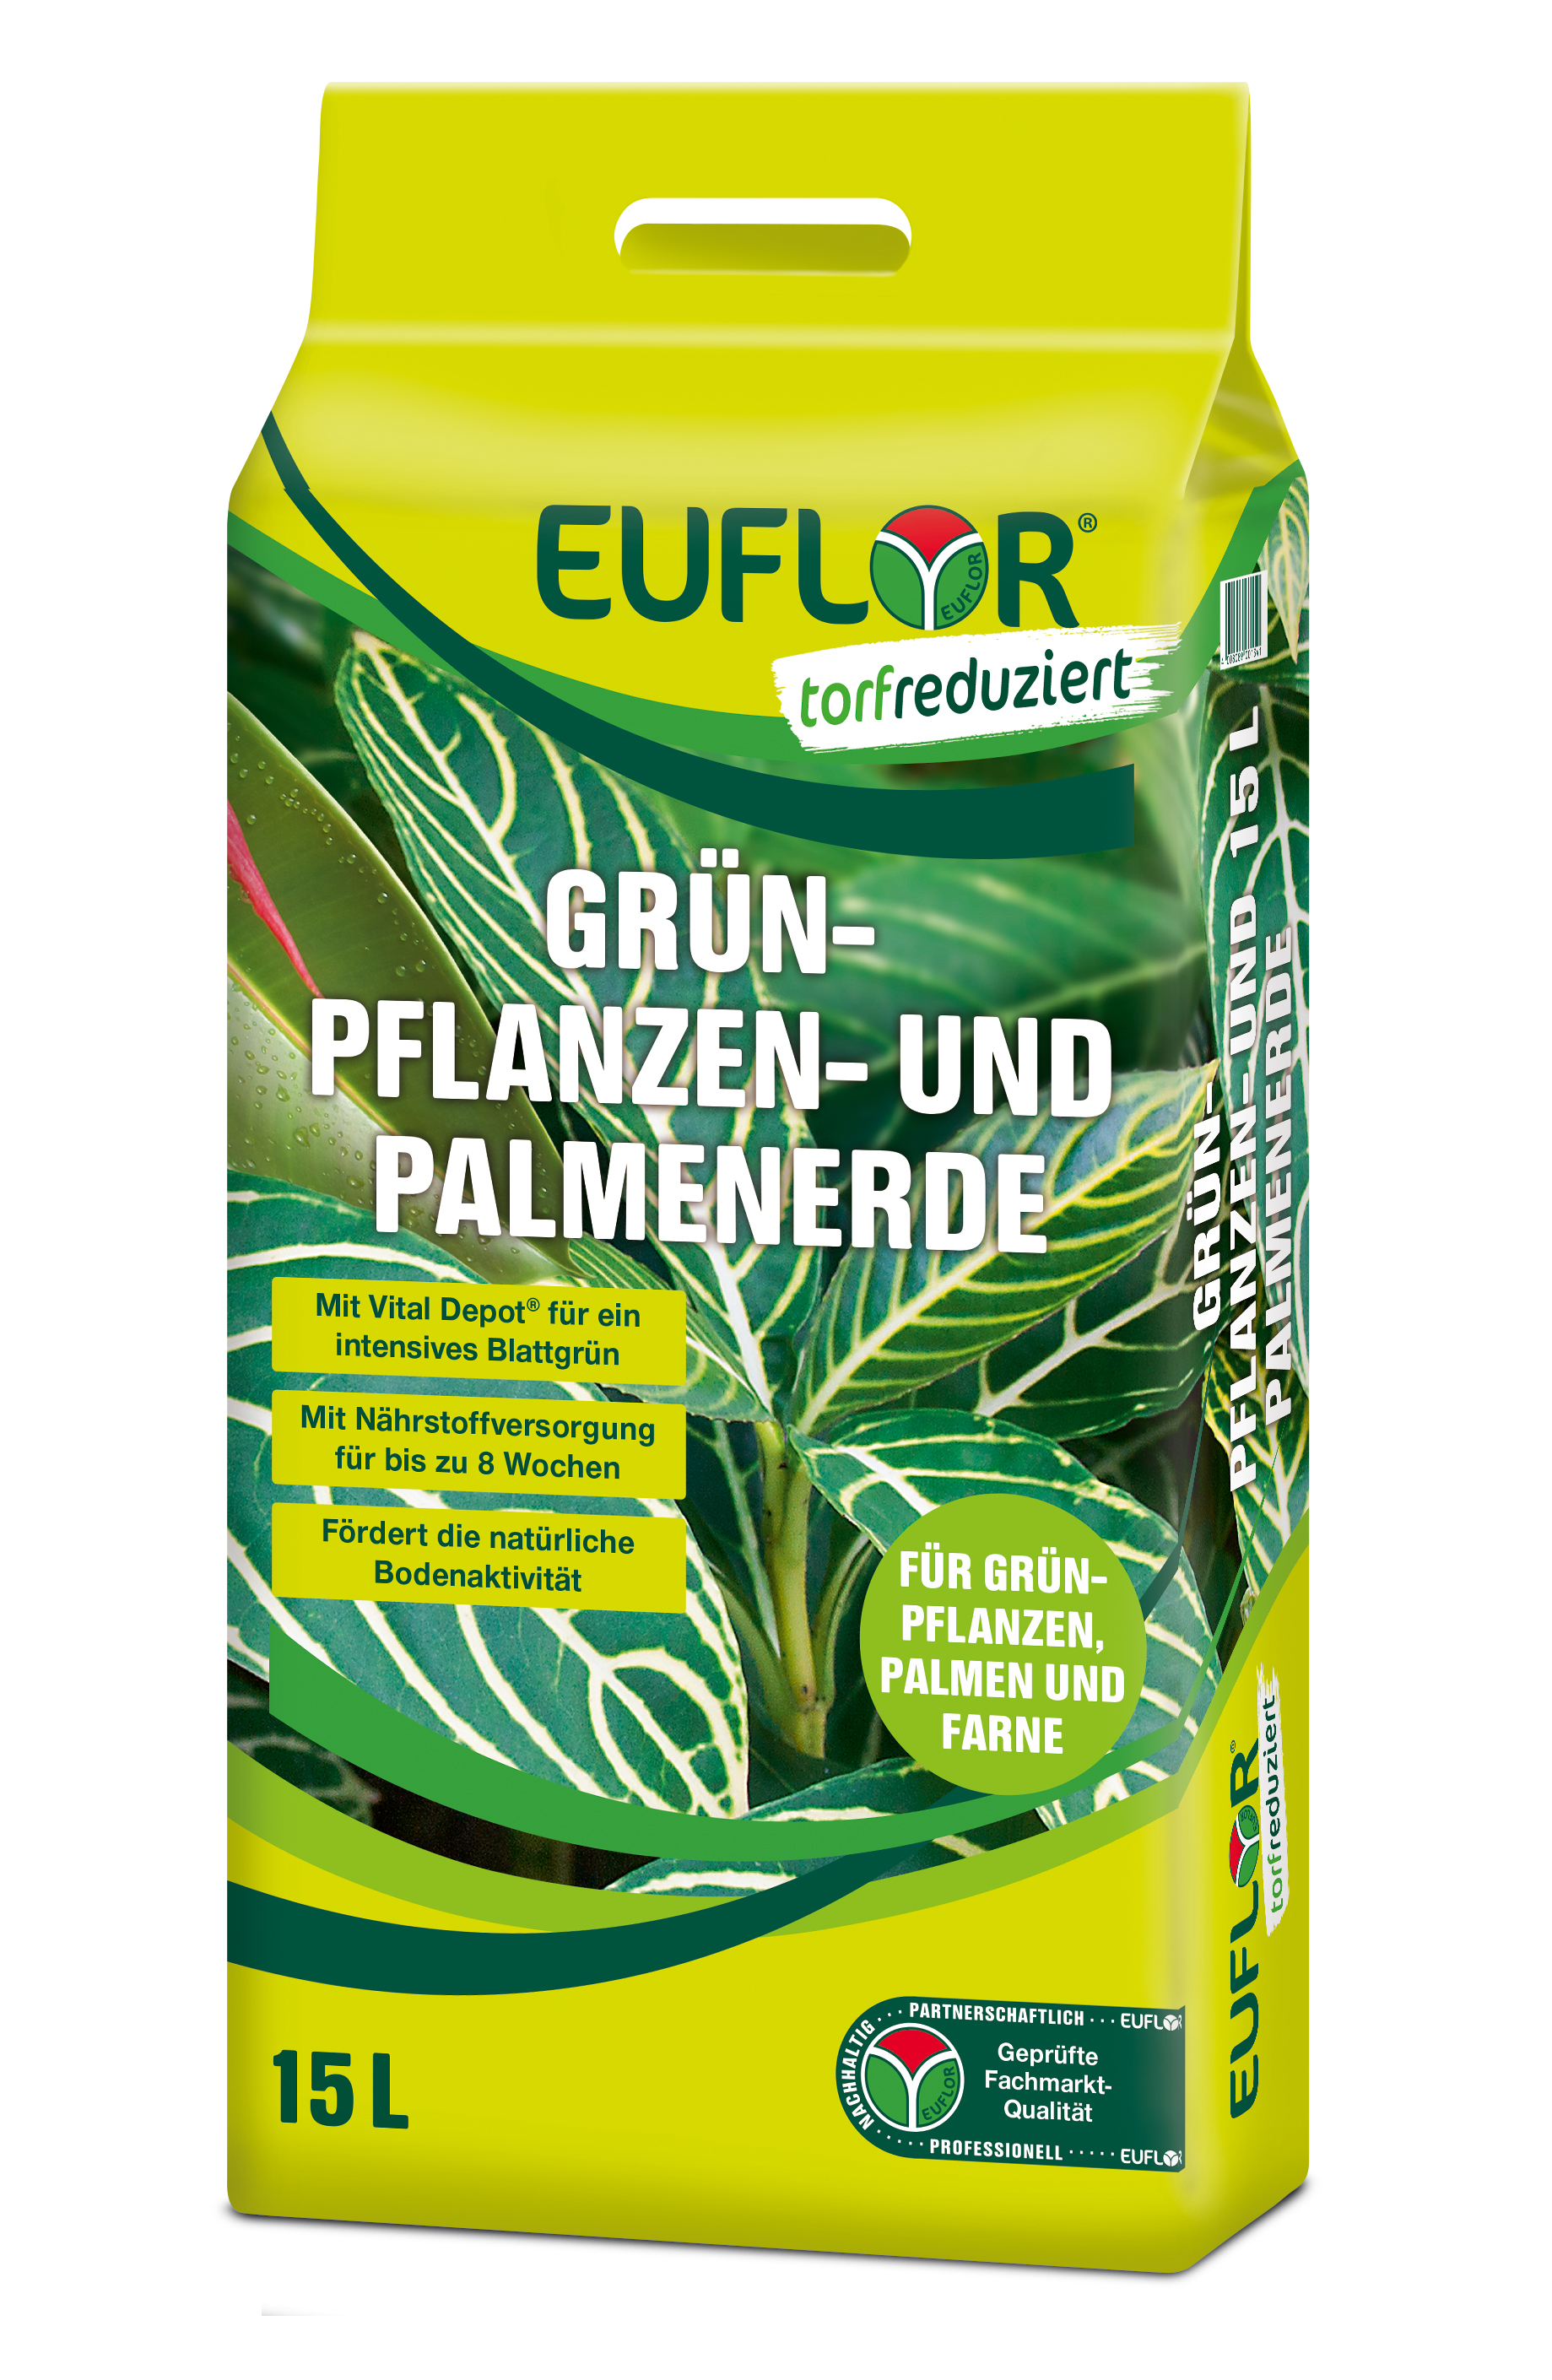 Euflor Grünpflanzen- und Palmenerde, 15 L